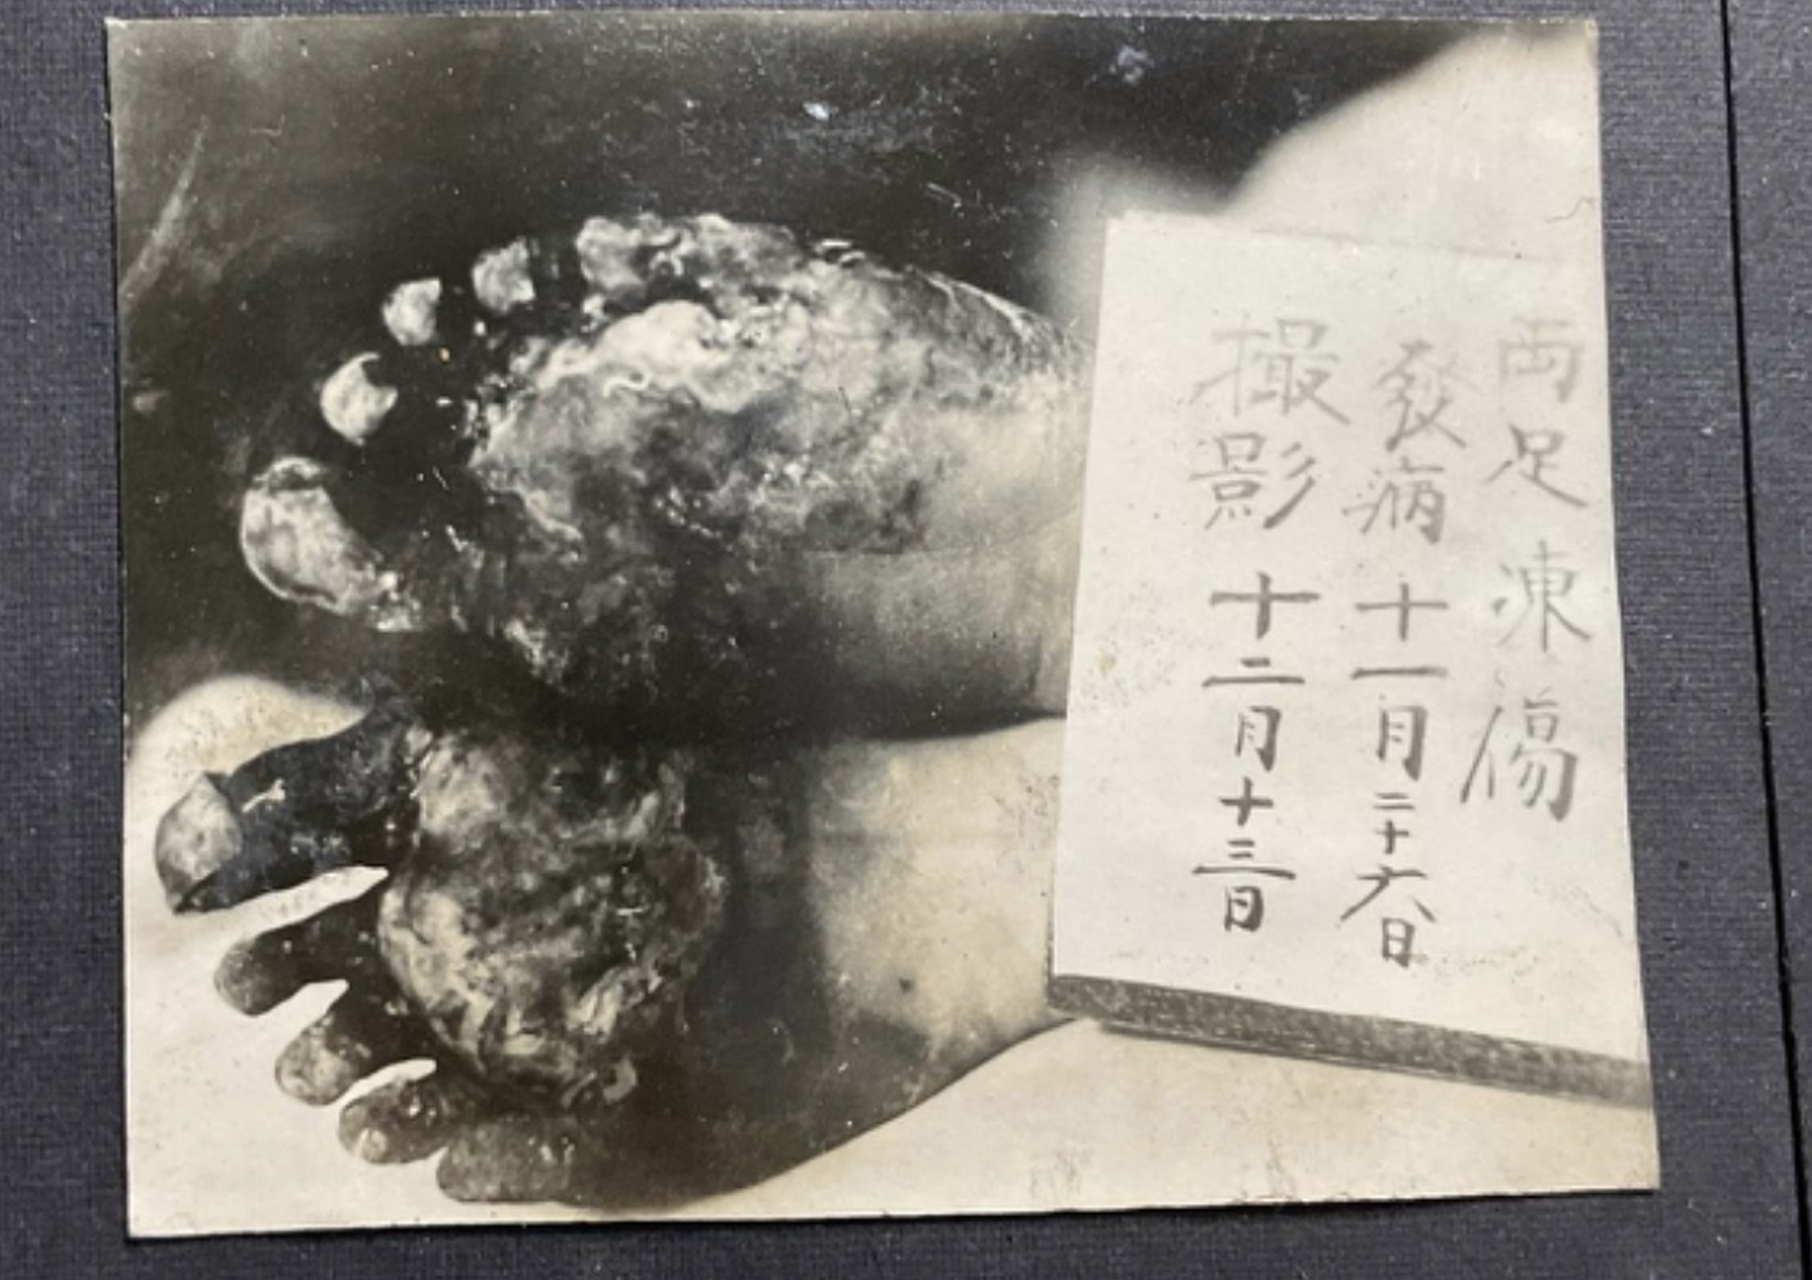 罕见伪满时期日军731部队研究人体细菌实验旧照